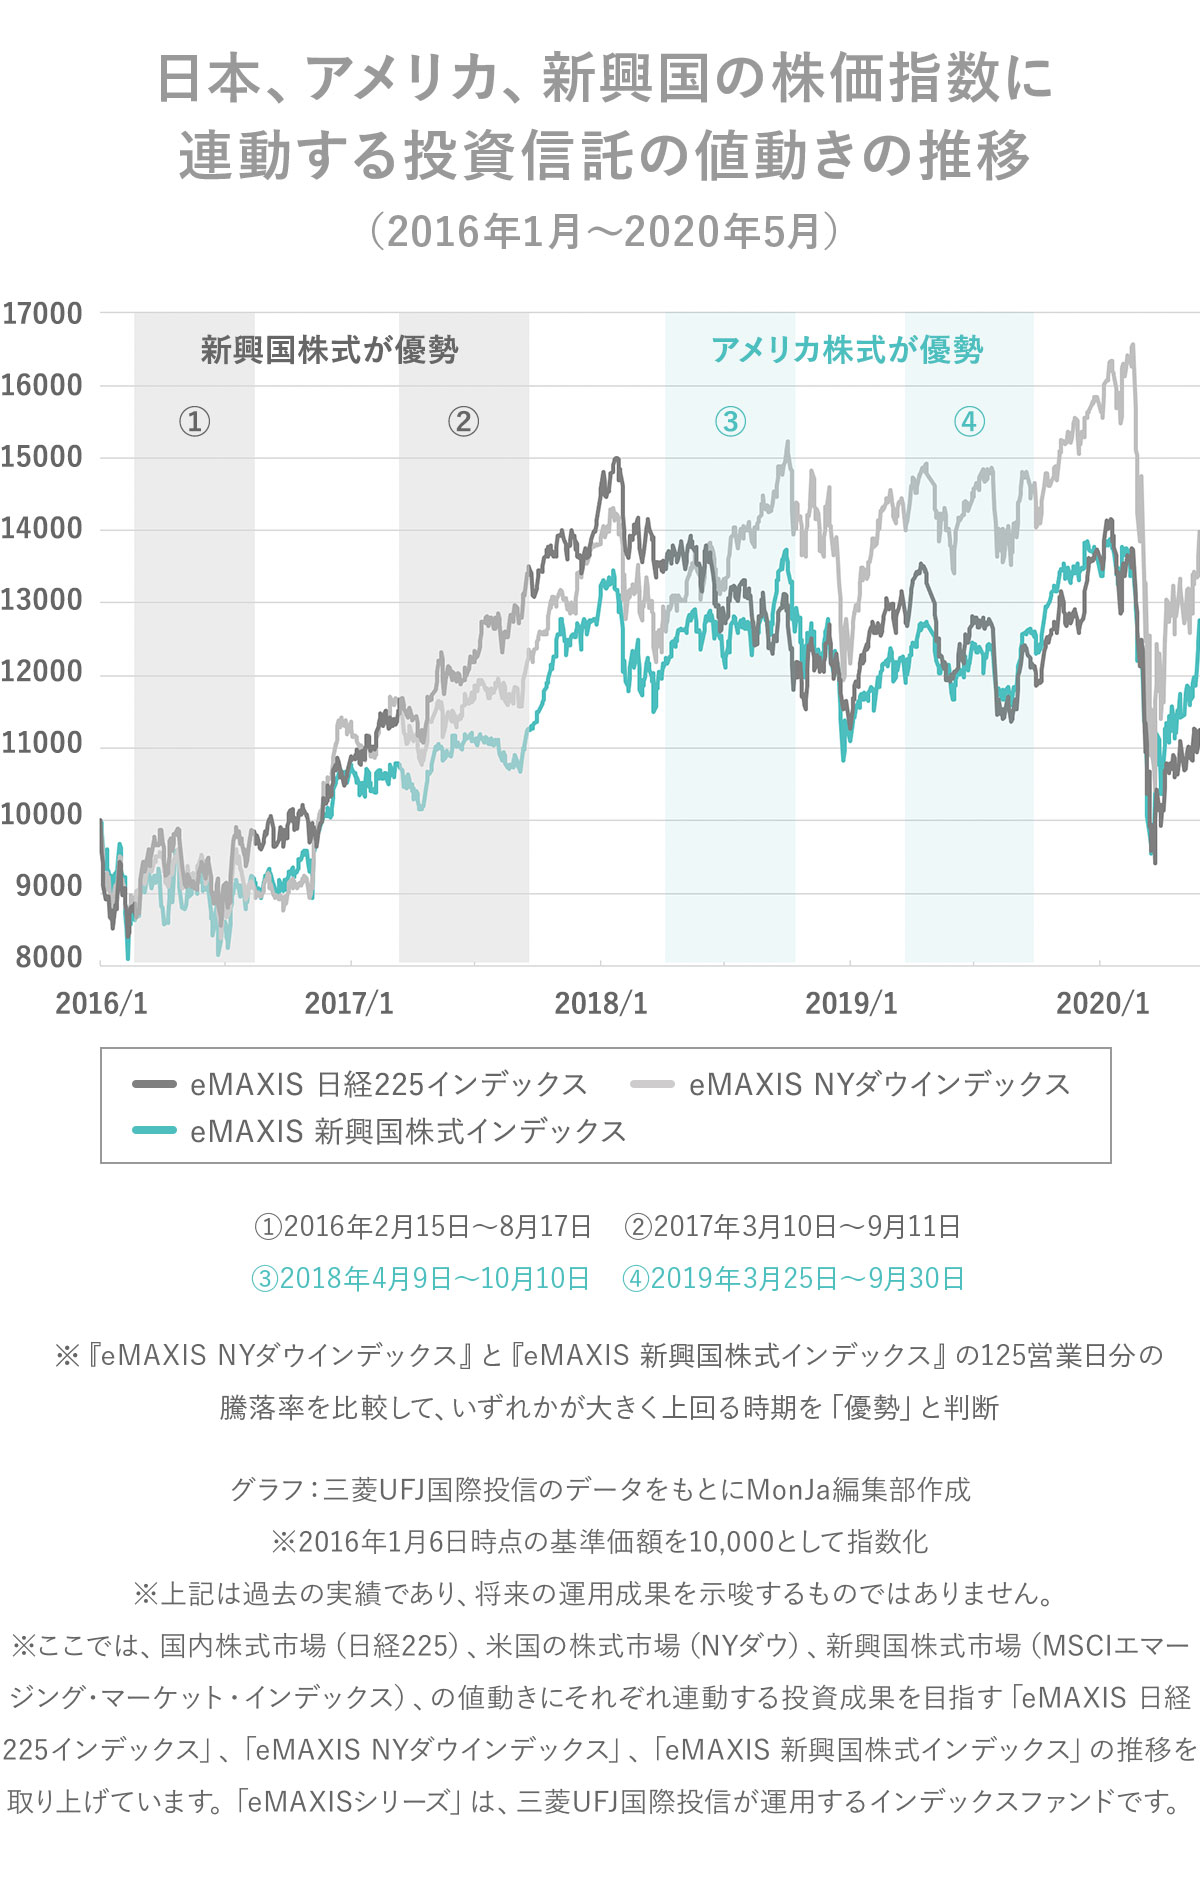 日本、アメリカ、新興国の株価指数に連動する投資信託の値動きの推移